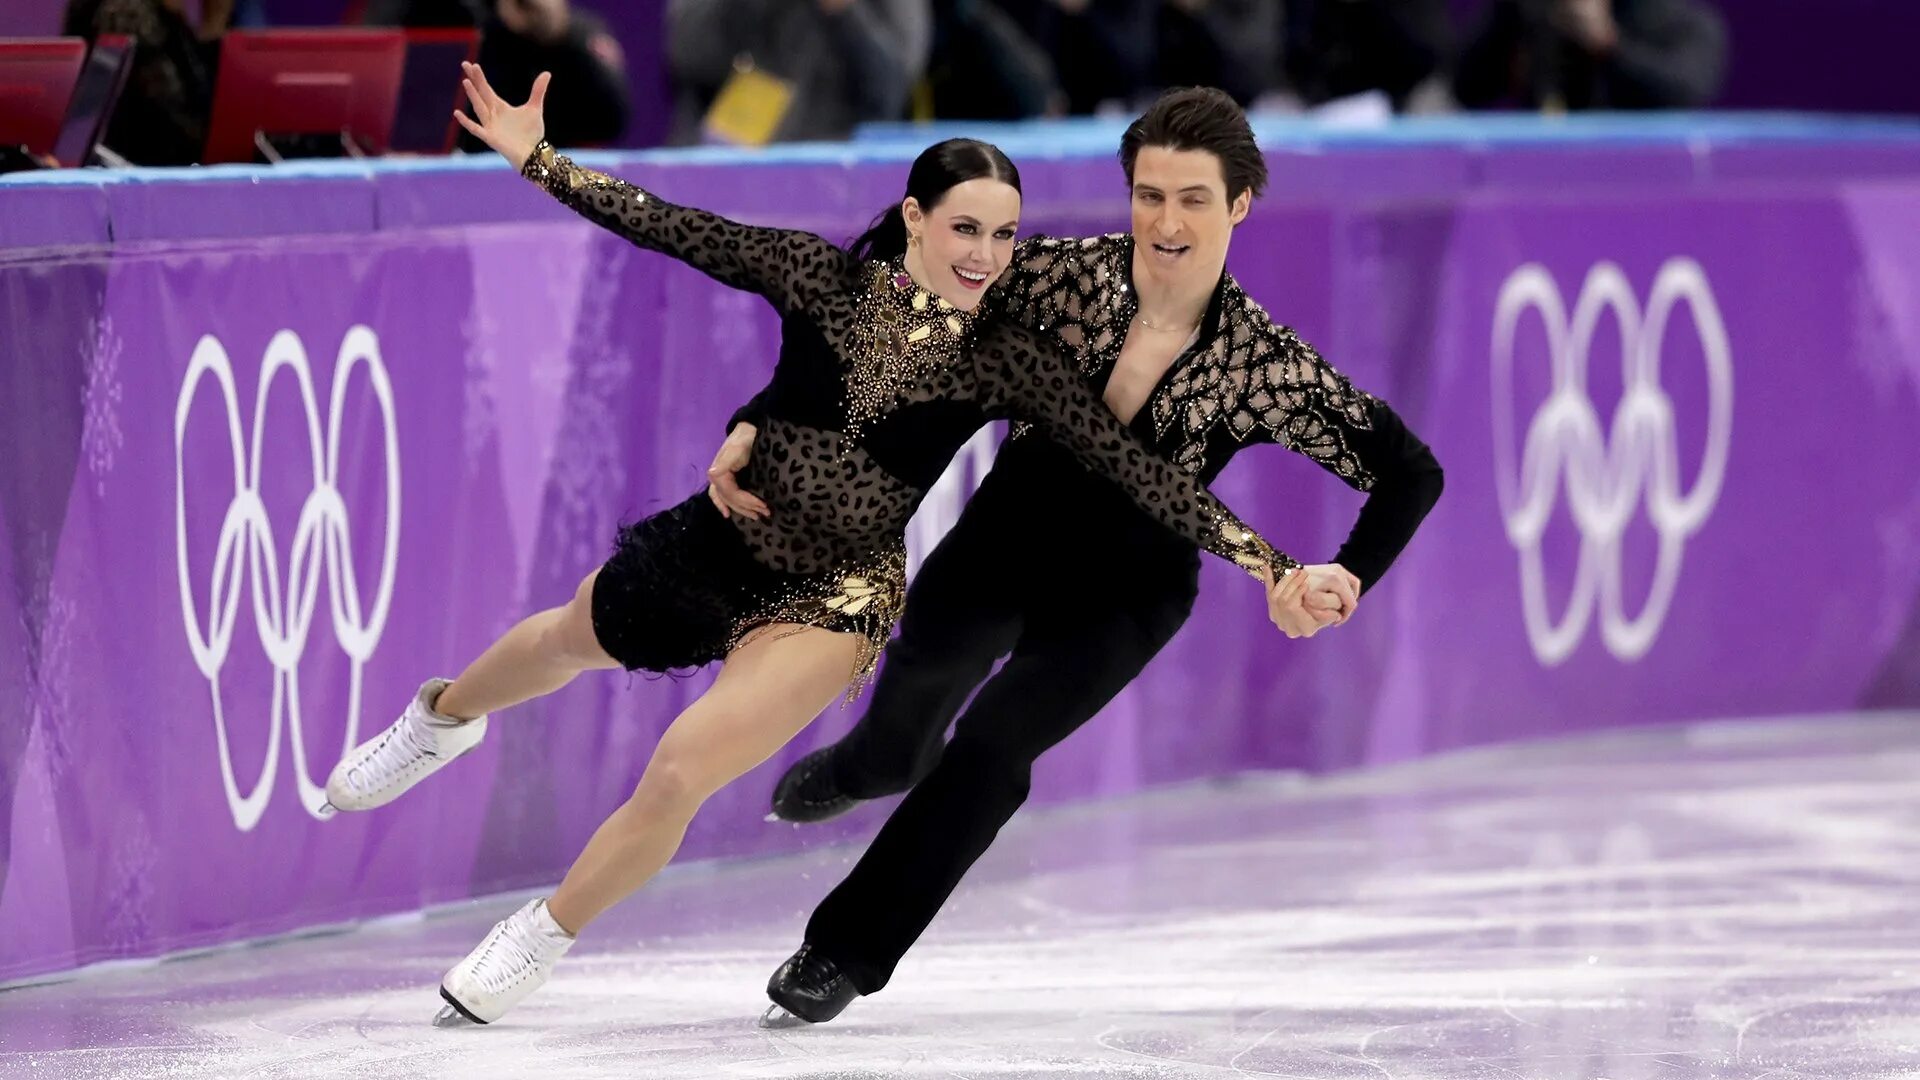 Игры катания на льду. Тесса Вертью и Скотт Моир на Олимпиаде в Корее 2018. Тесса Виртью и Скотт Мойр Гран при Канада.